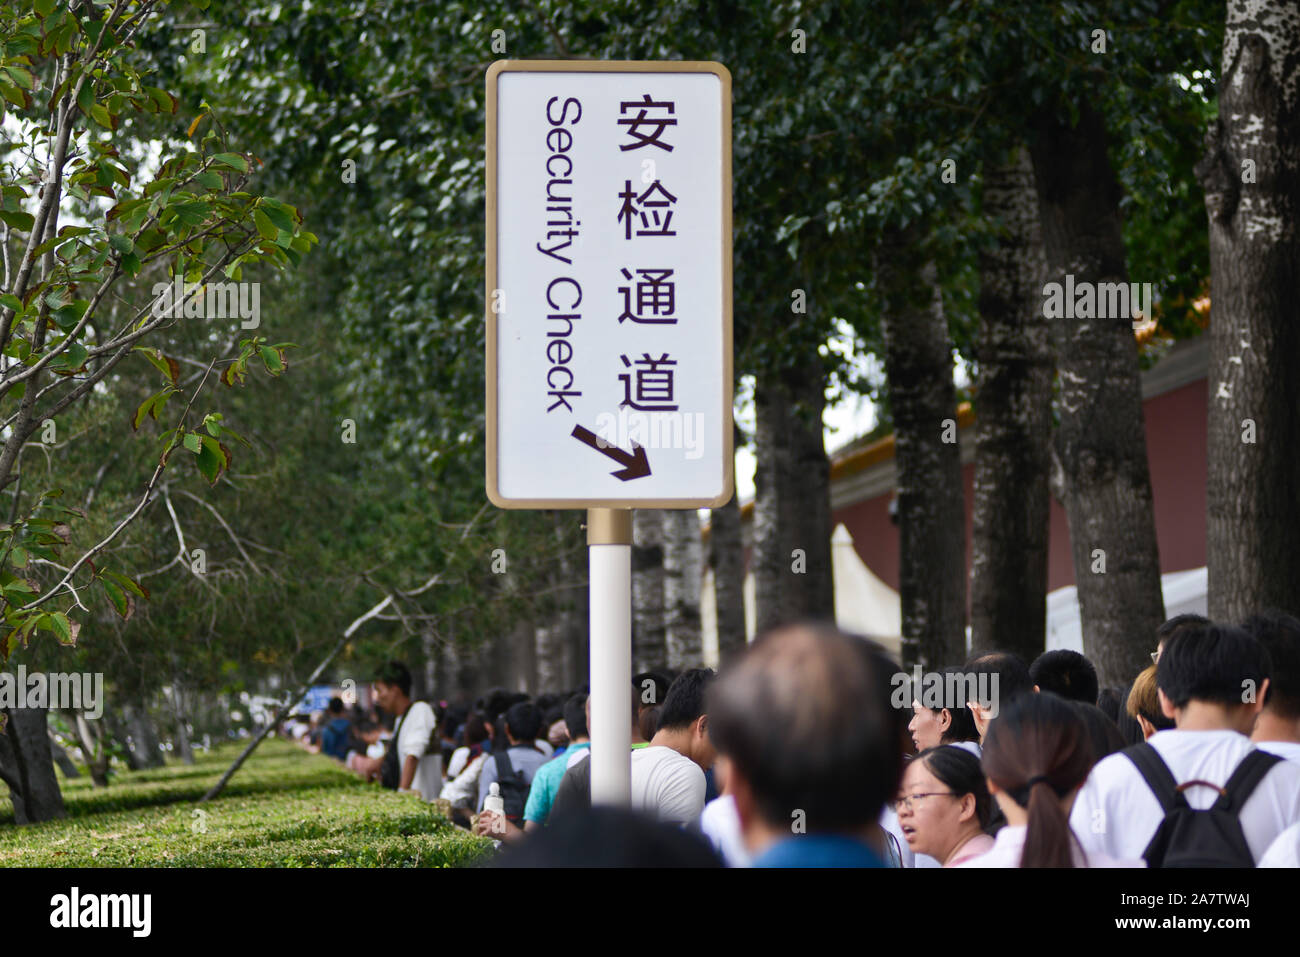 Faire la queue dans un point de contrôle de sécurité à la place Tienanmen (East Chang'an Avenue), Beijing, Chine Banque D'Images